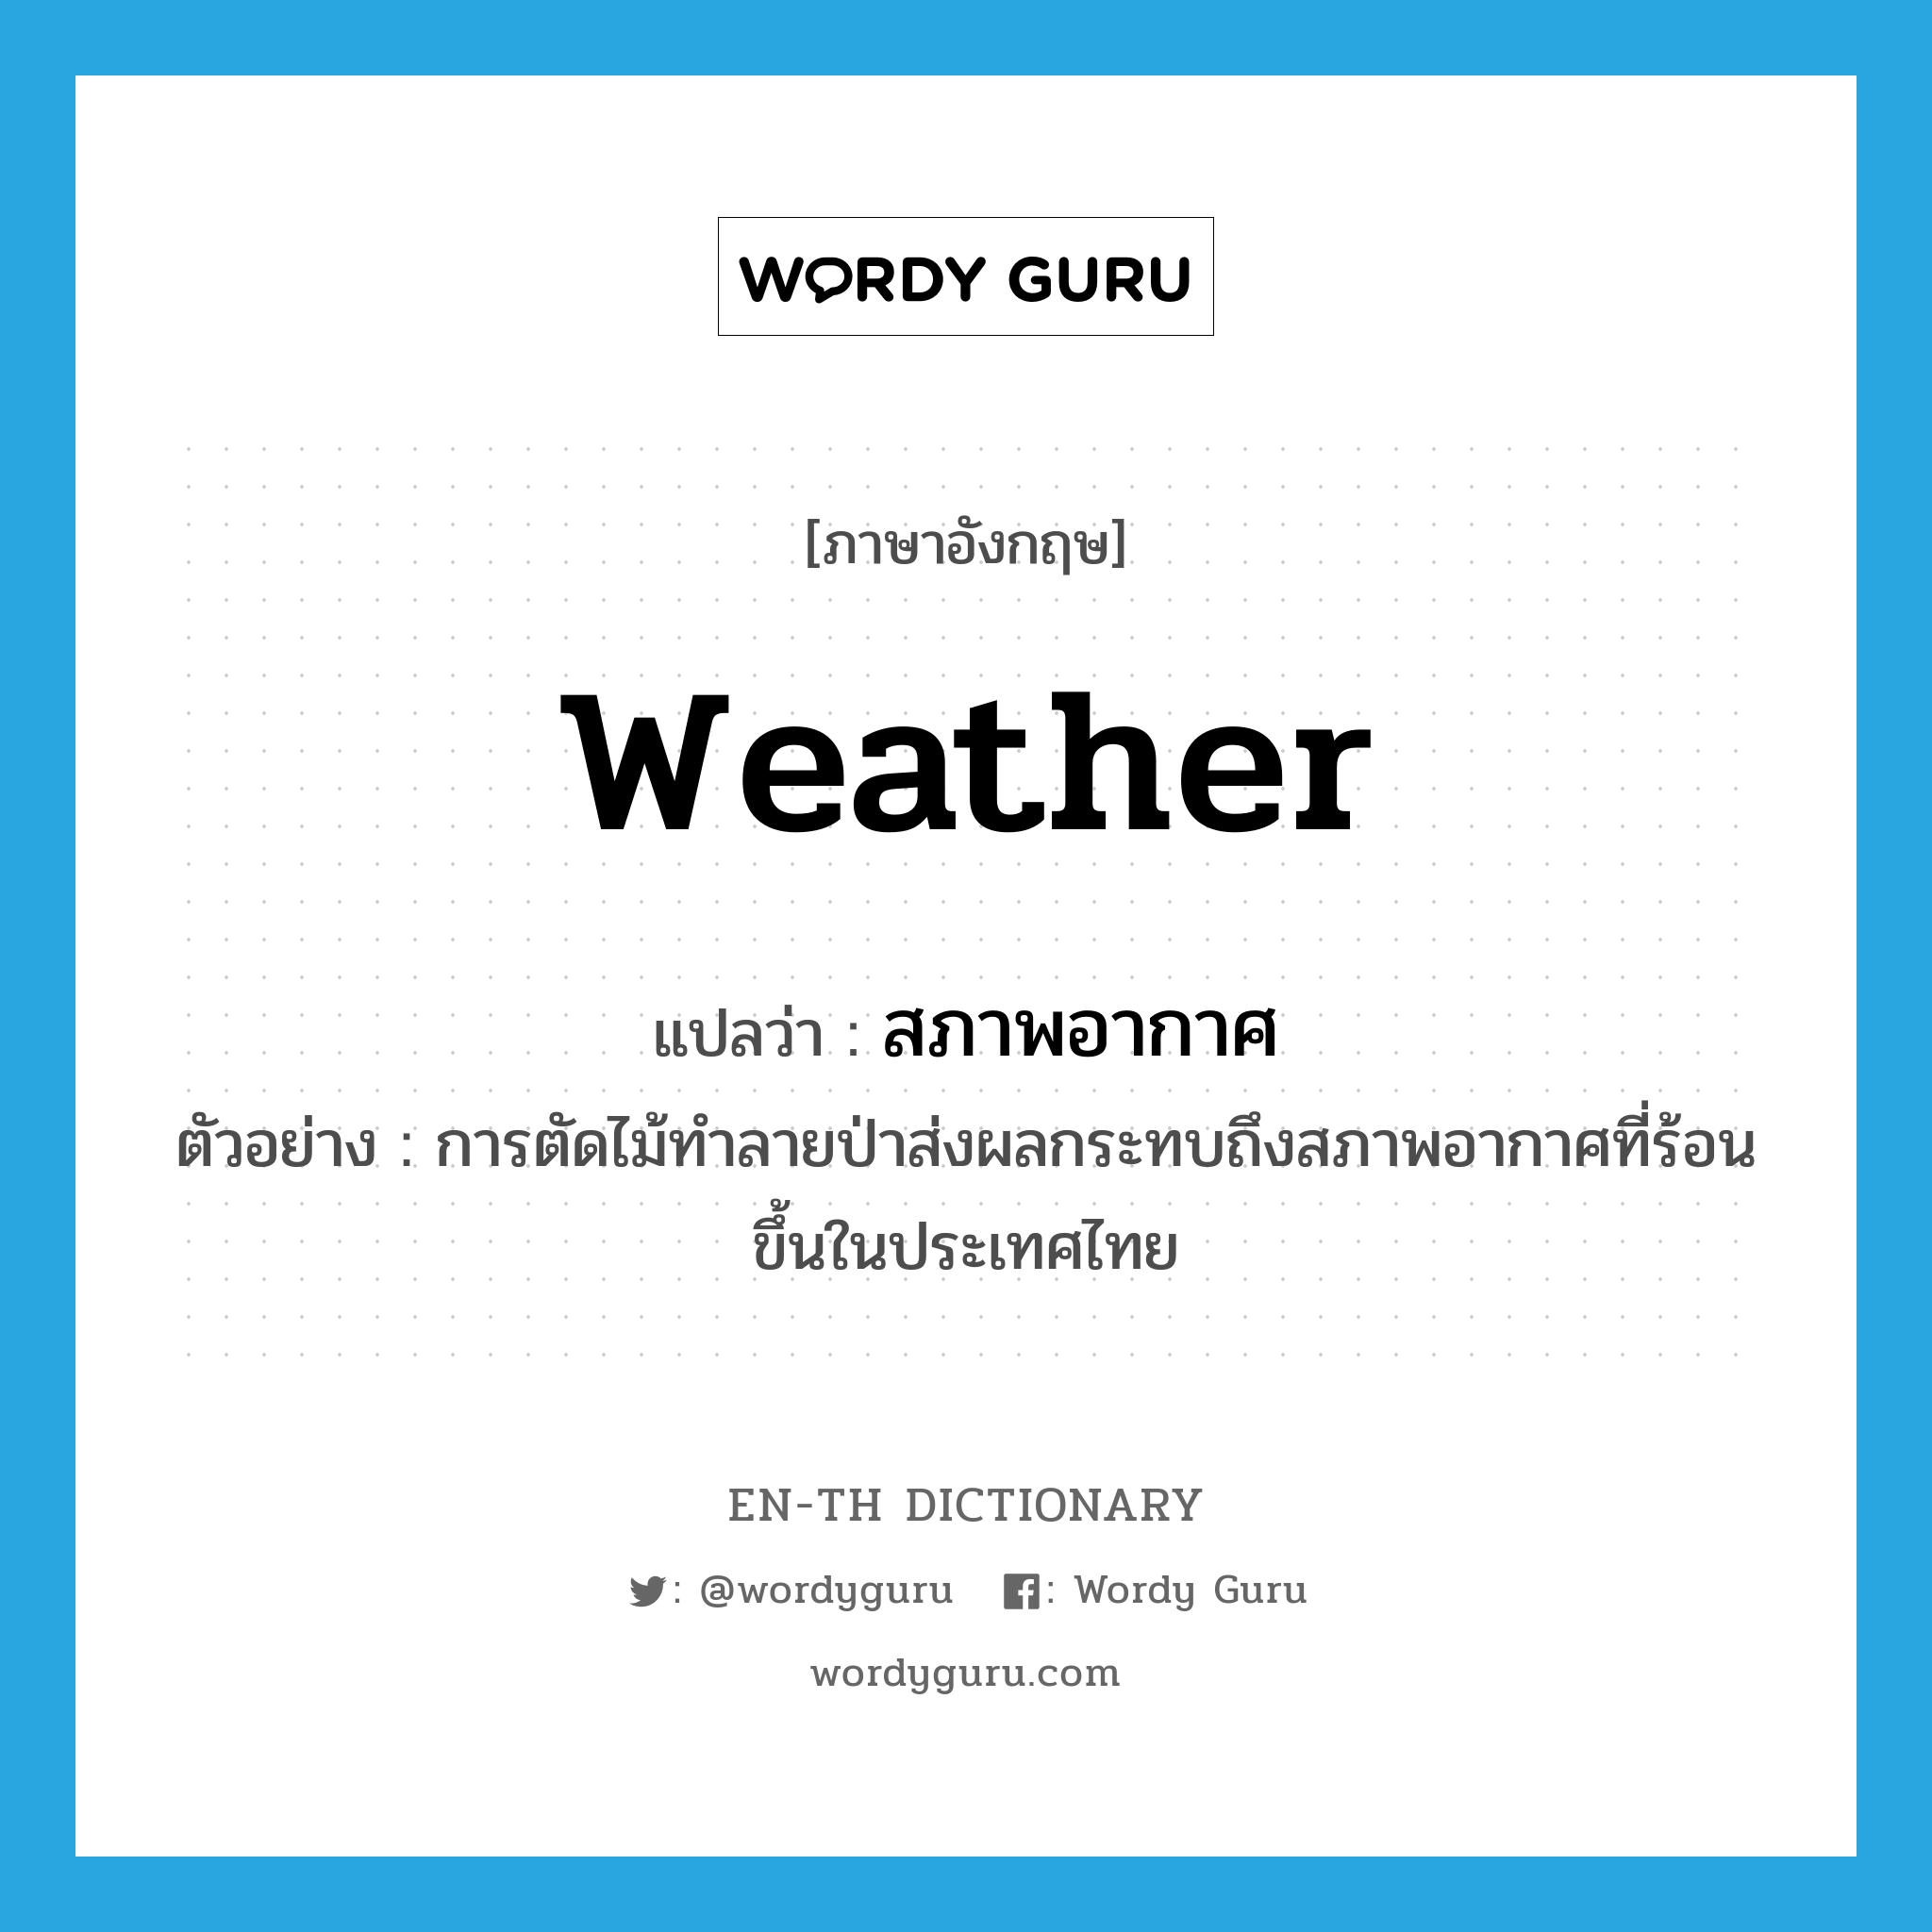 สภาพอากาศ ภาษาอังกฤษ?, คำศัพท์ภาษาอังกฤษ สภาพอากาศ แปลว่า weather ประเภท N ตัวอย่าง การตัดไม้ทำลายป่าส่งผลกระทบถึงสภาพอากาศที่ร้อนขึ้นในประเทศไทย หมวด N